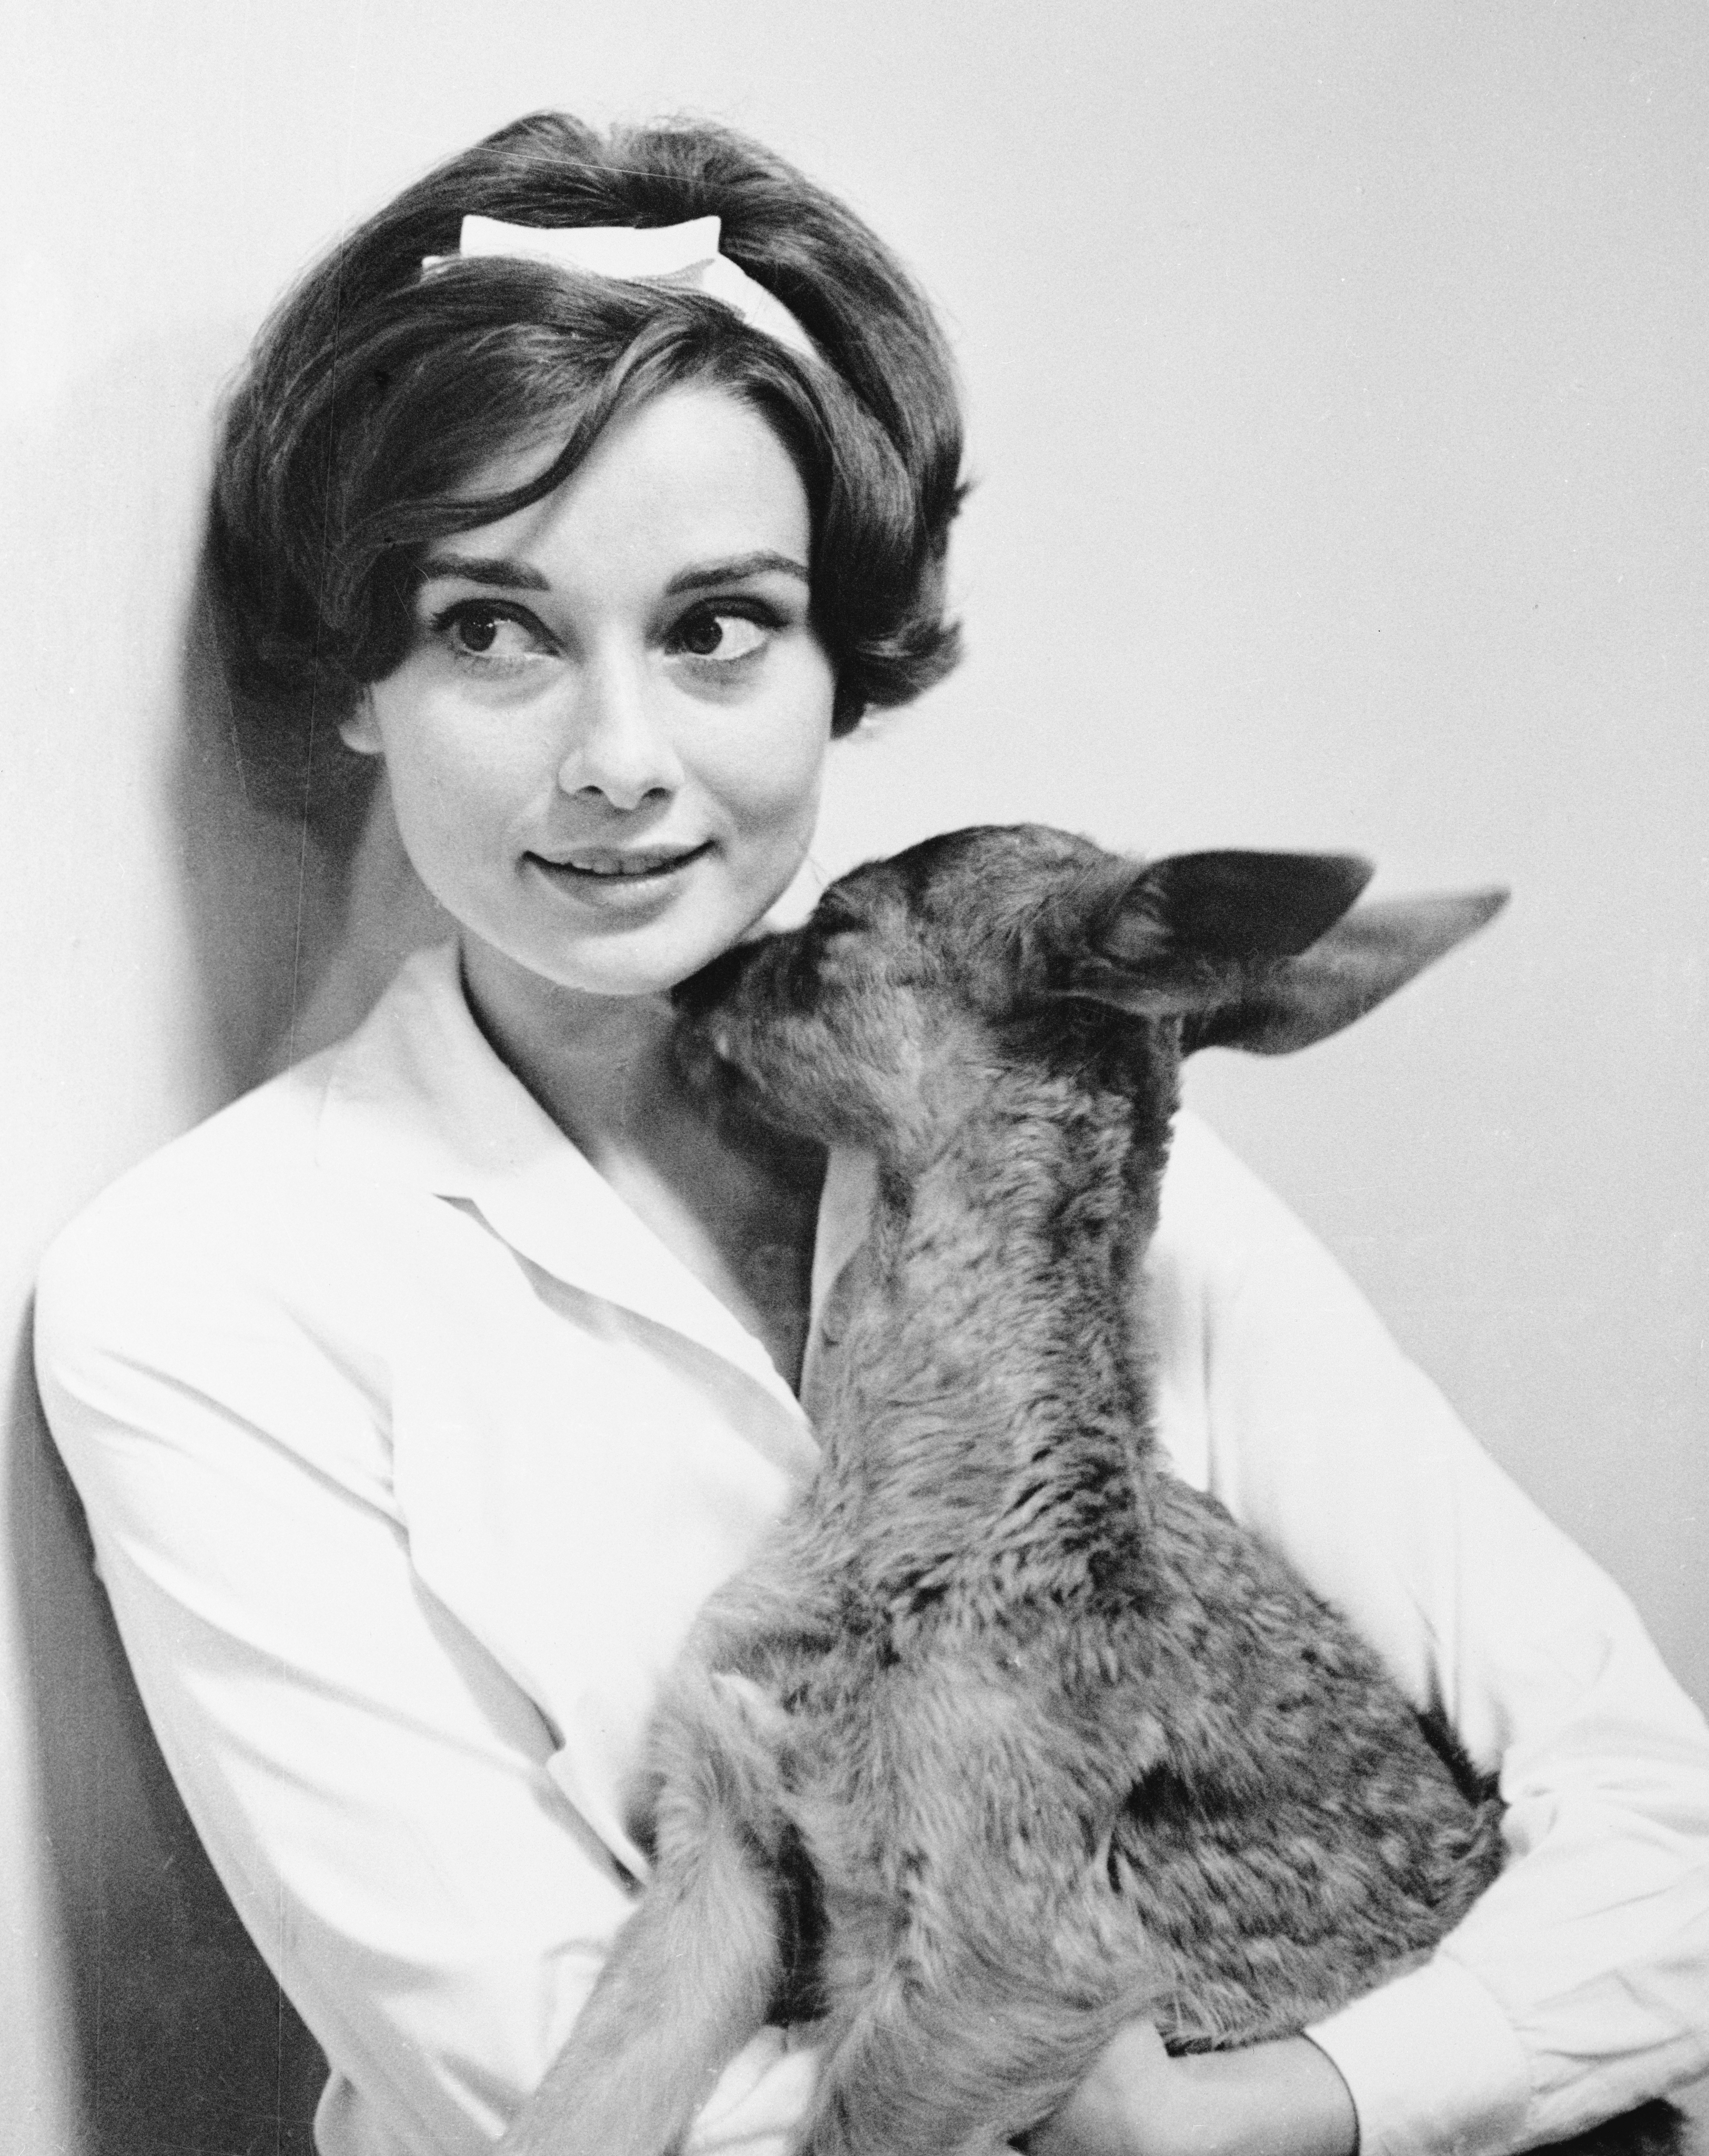 Audrey Hepburn et son animal de compagnie Fawn Ip lui donnant un baiser dans sa maison en 1958 | Source : Getty Images